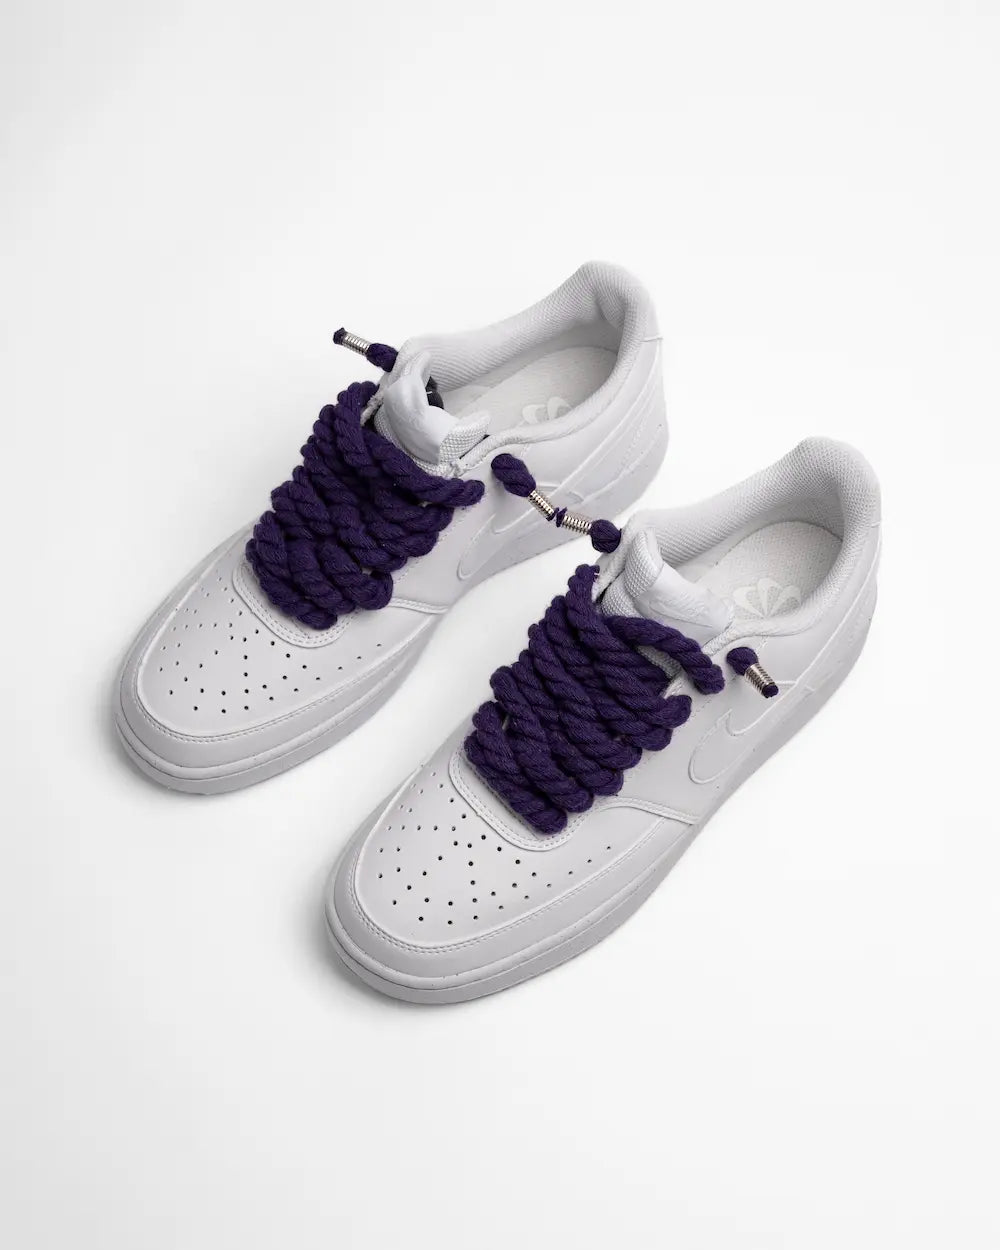 Nike Court Vision personalizzata con lacci in corda viola